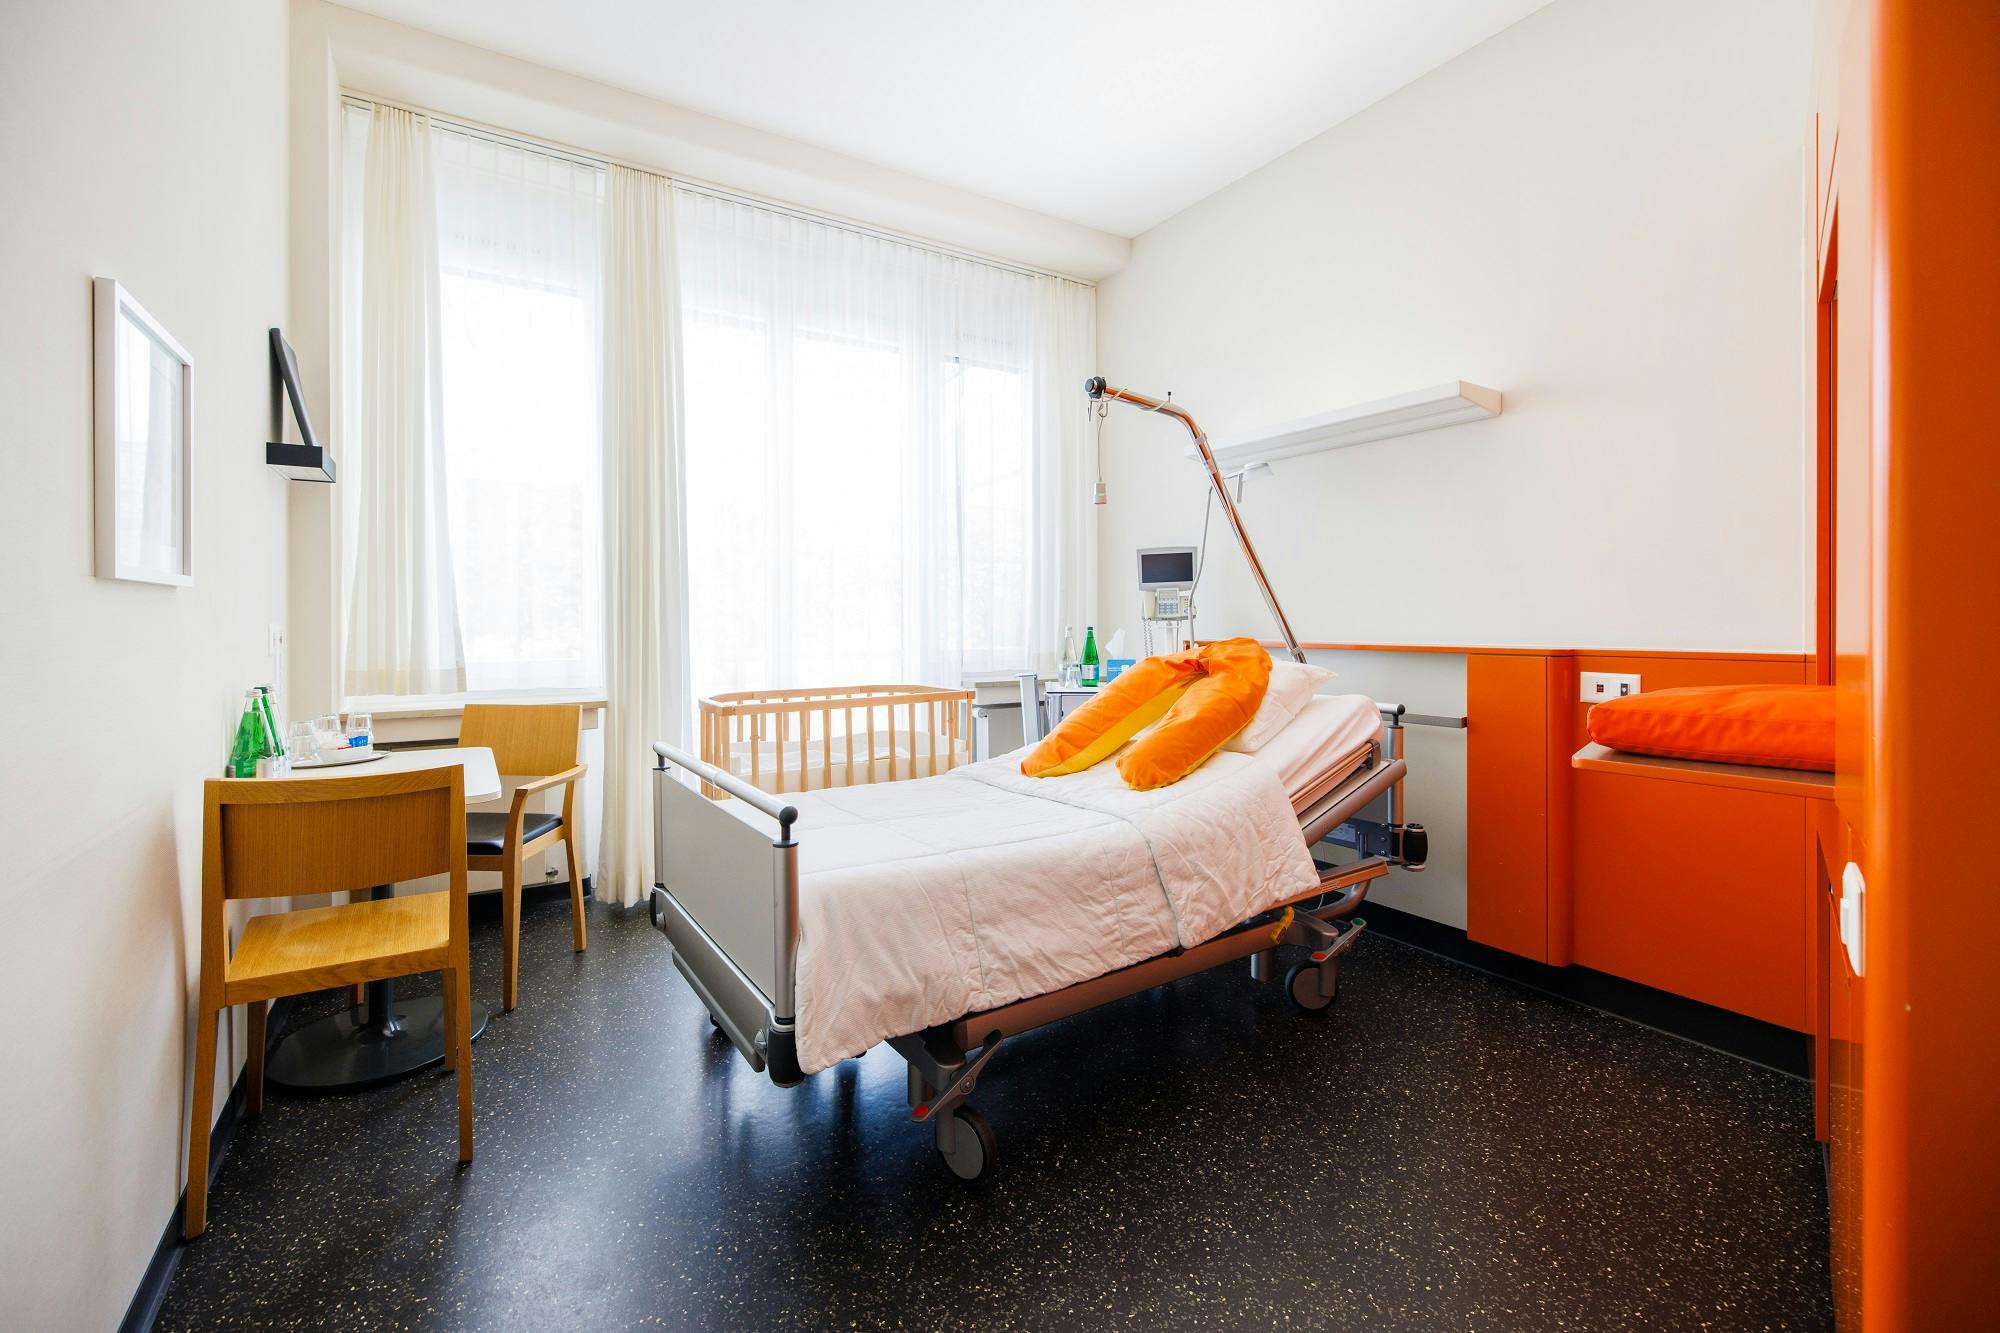 Krankenhauszimmer mit Bett, Nachttisch und Fenster.